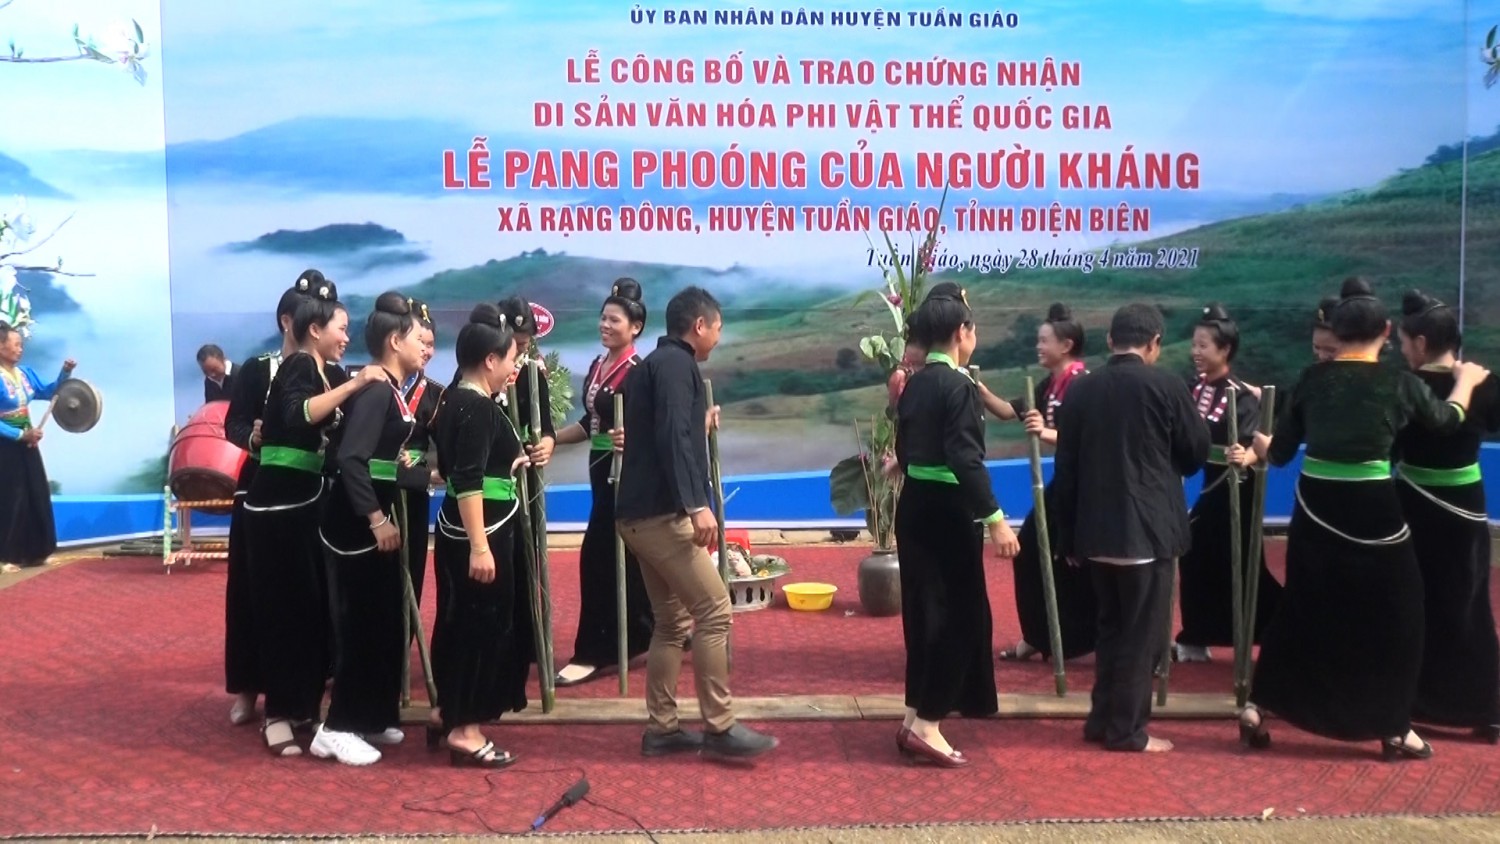 Lễ Pang Phoóng được công nhận di sản văn hóa phi vật thể Quốc gia